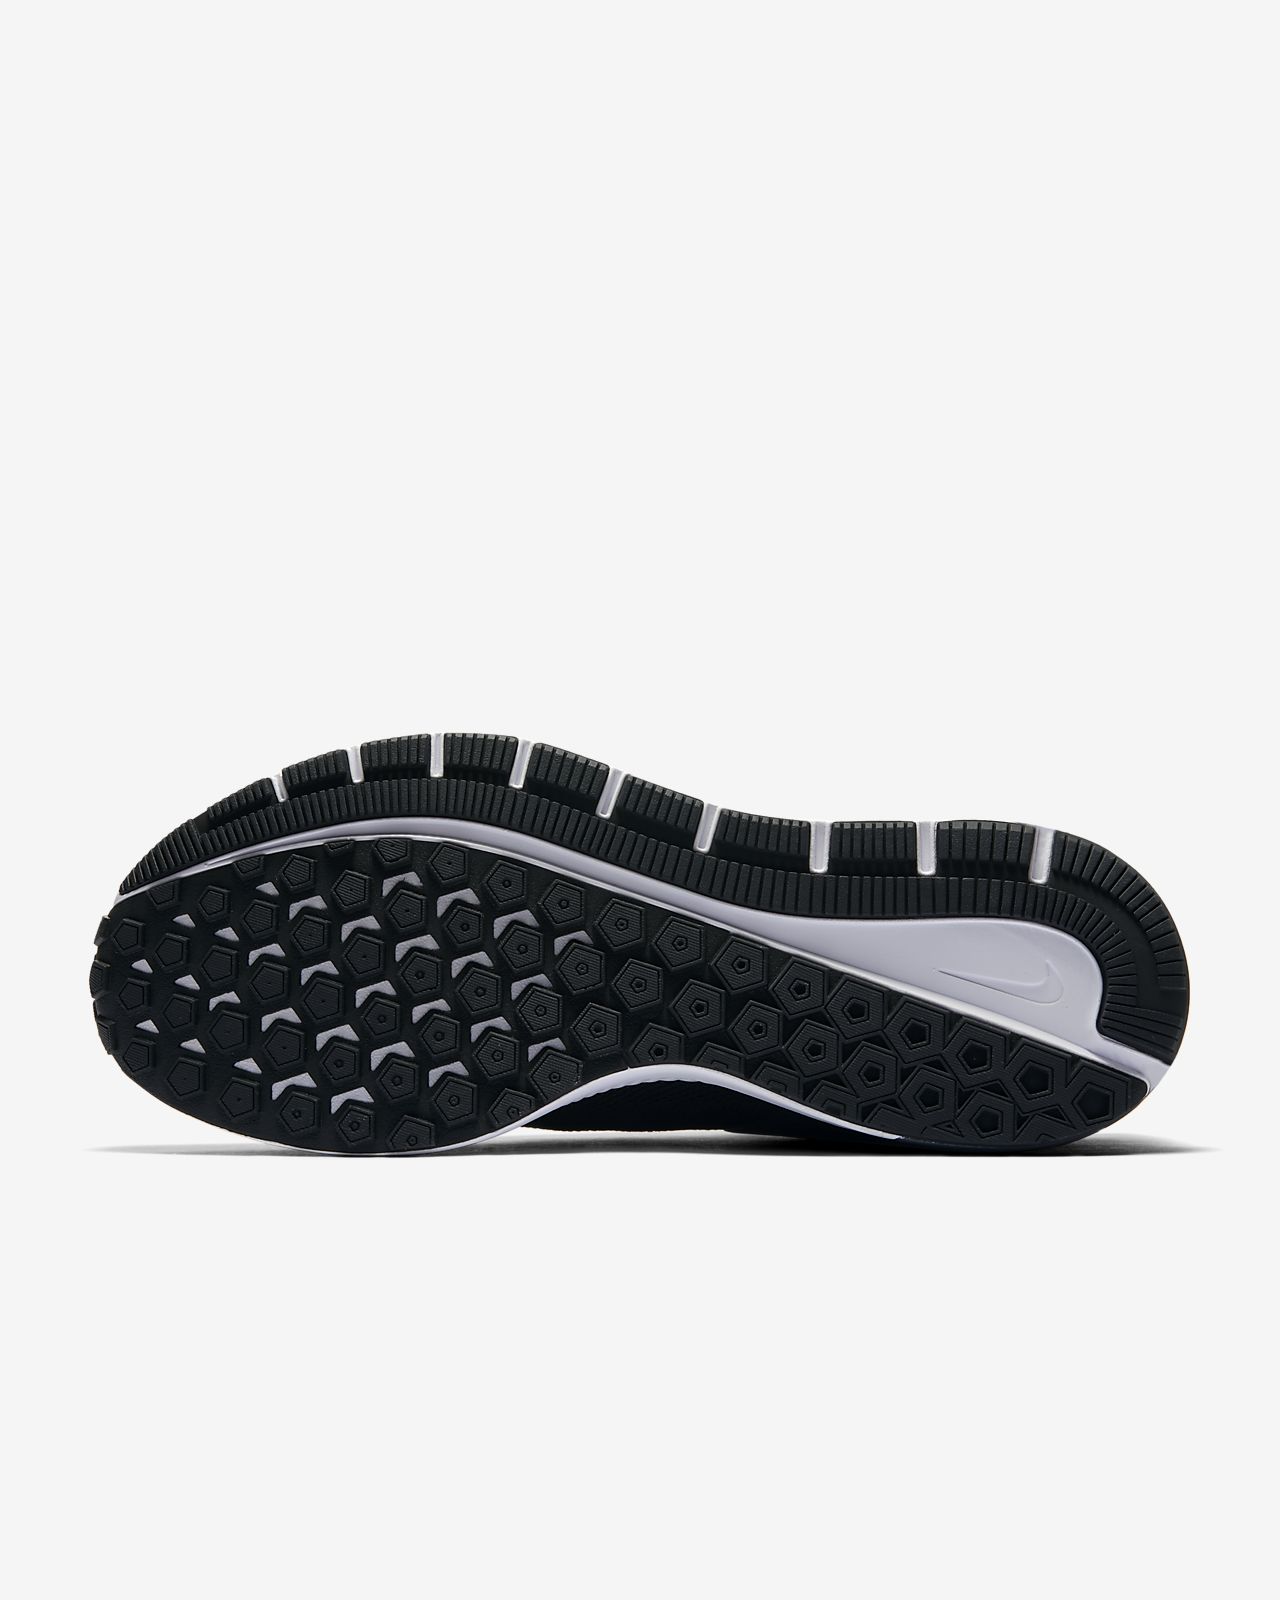 Nike Unisex Adults' Phantom Venom Pro Fg Footbal Shoes